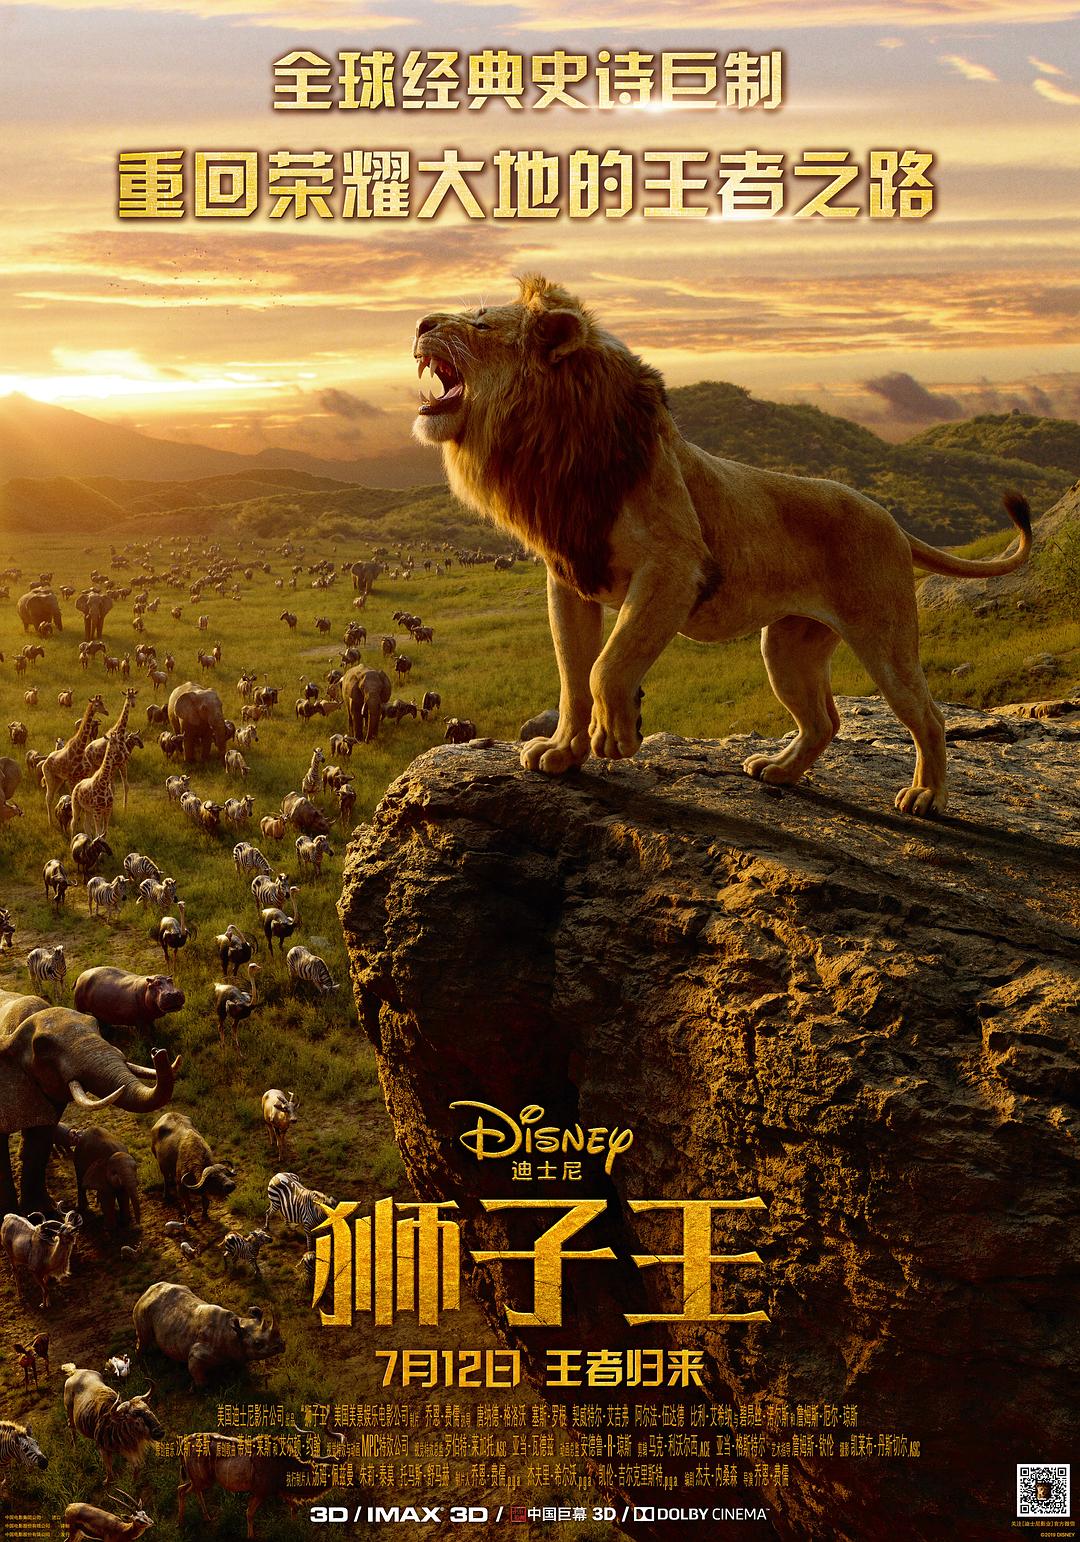 狮子王/狮子王真人版 The.Lion.King.2019.1080p.BluRay.REMUX.AVC.DTS-HD.MA.TrueHD.7.1.Atmos-FGT 33.22GB-1.png